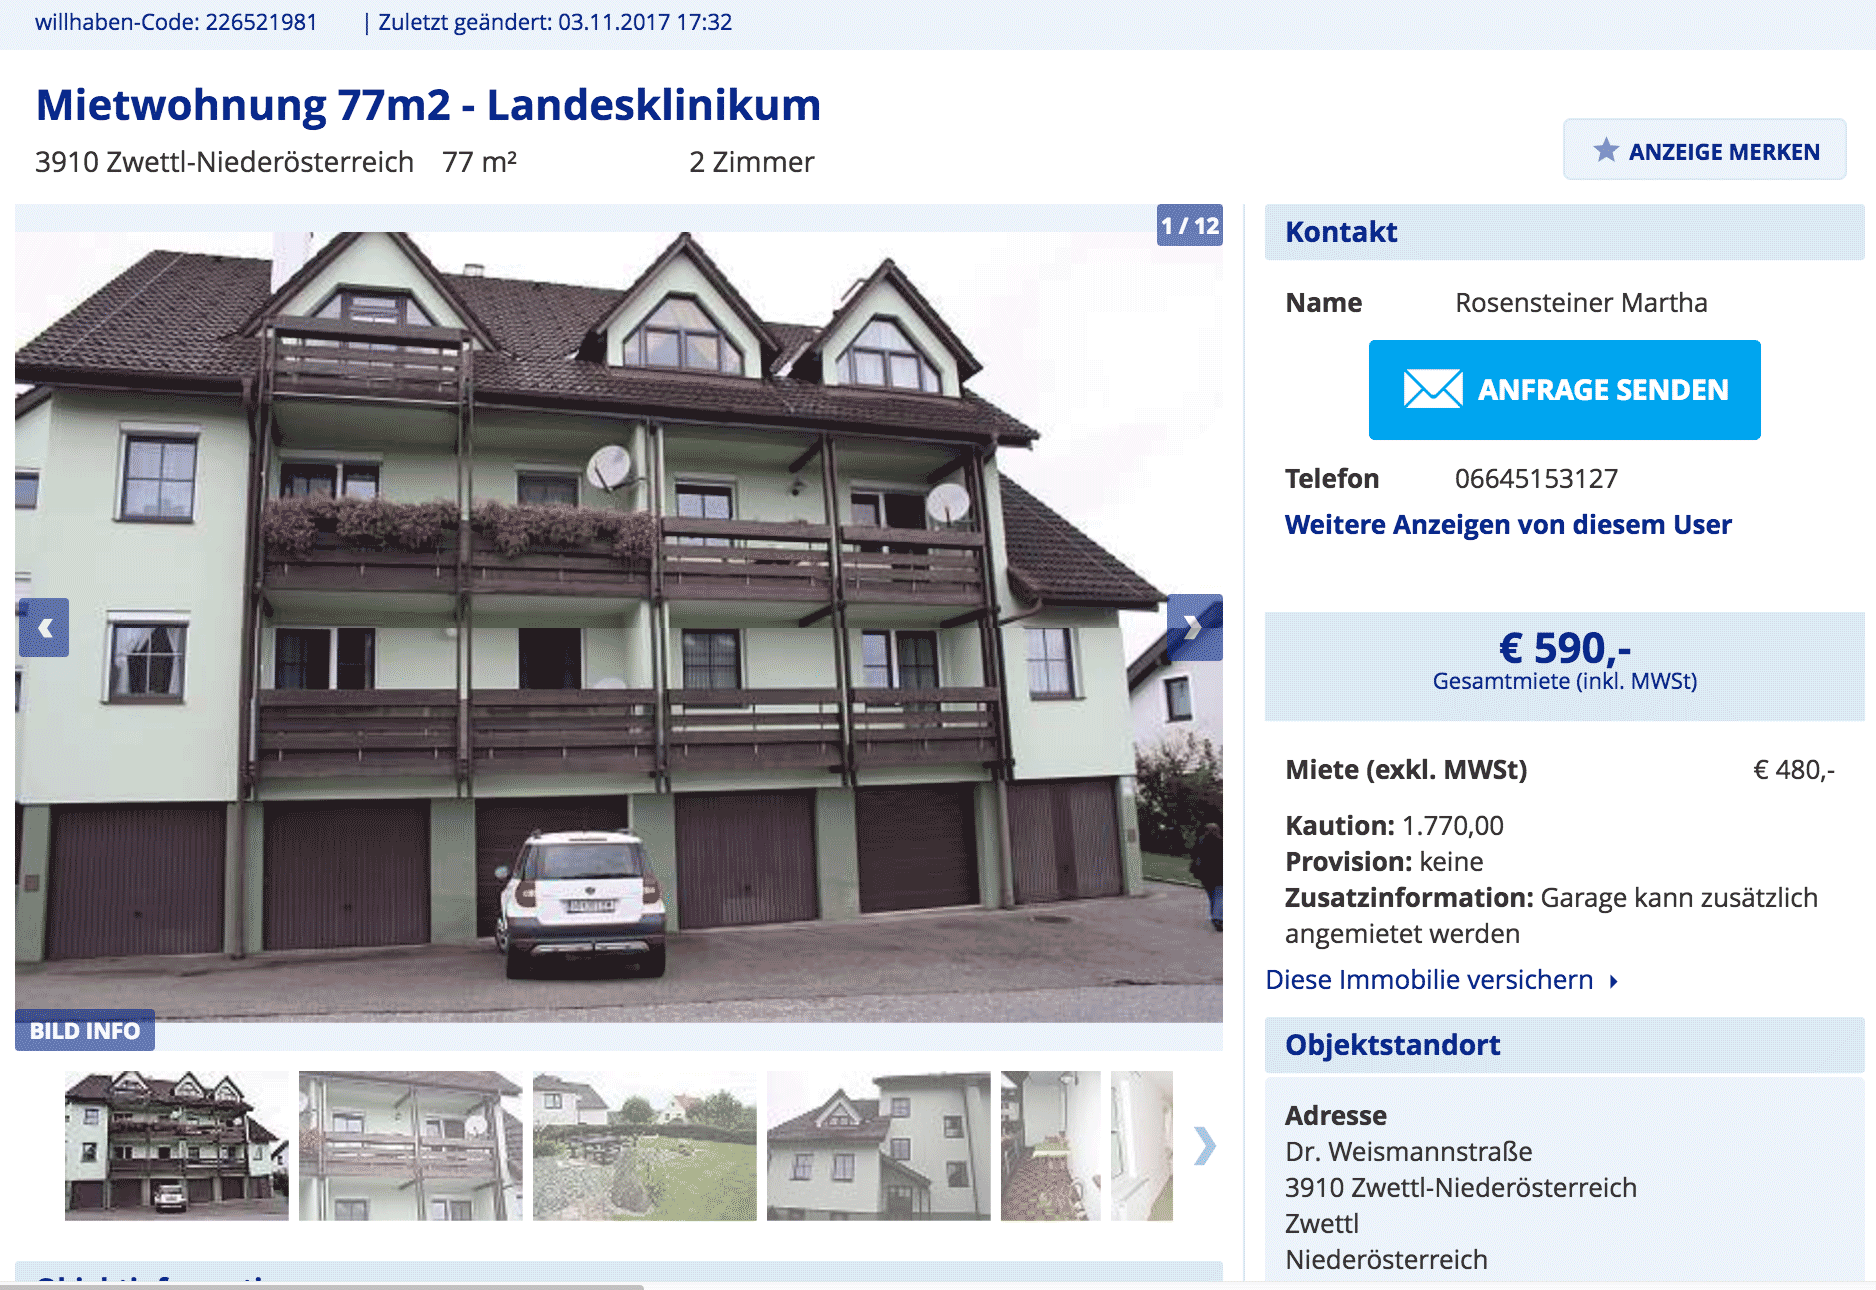 590 € в месяц стоит аренда двухкомнатной квартиры в многоквартирном доме